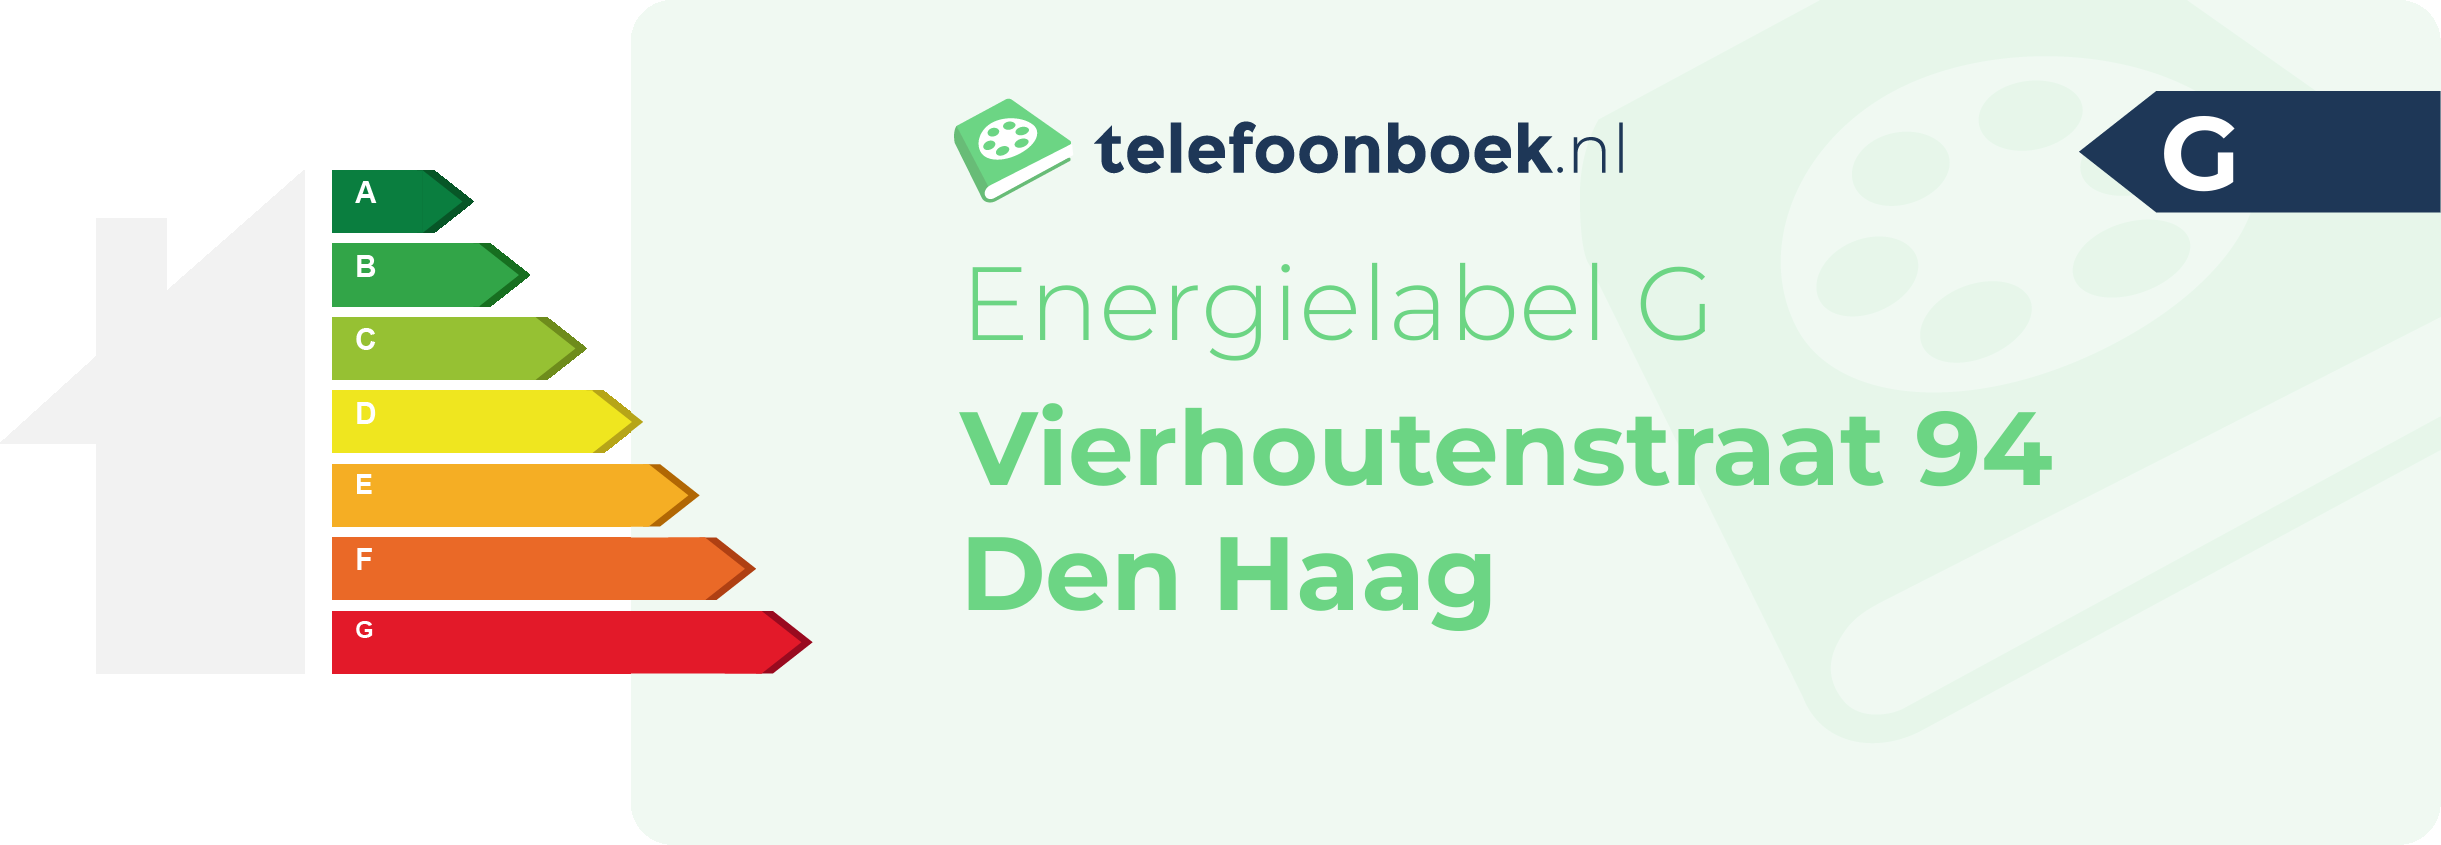 Energielabel Vierhoutenstraat 94 Den Haag